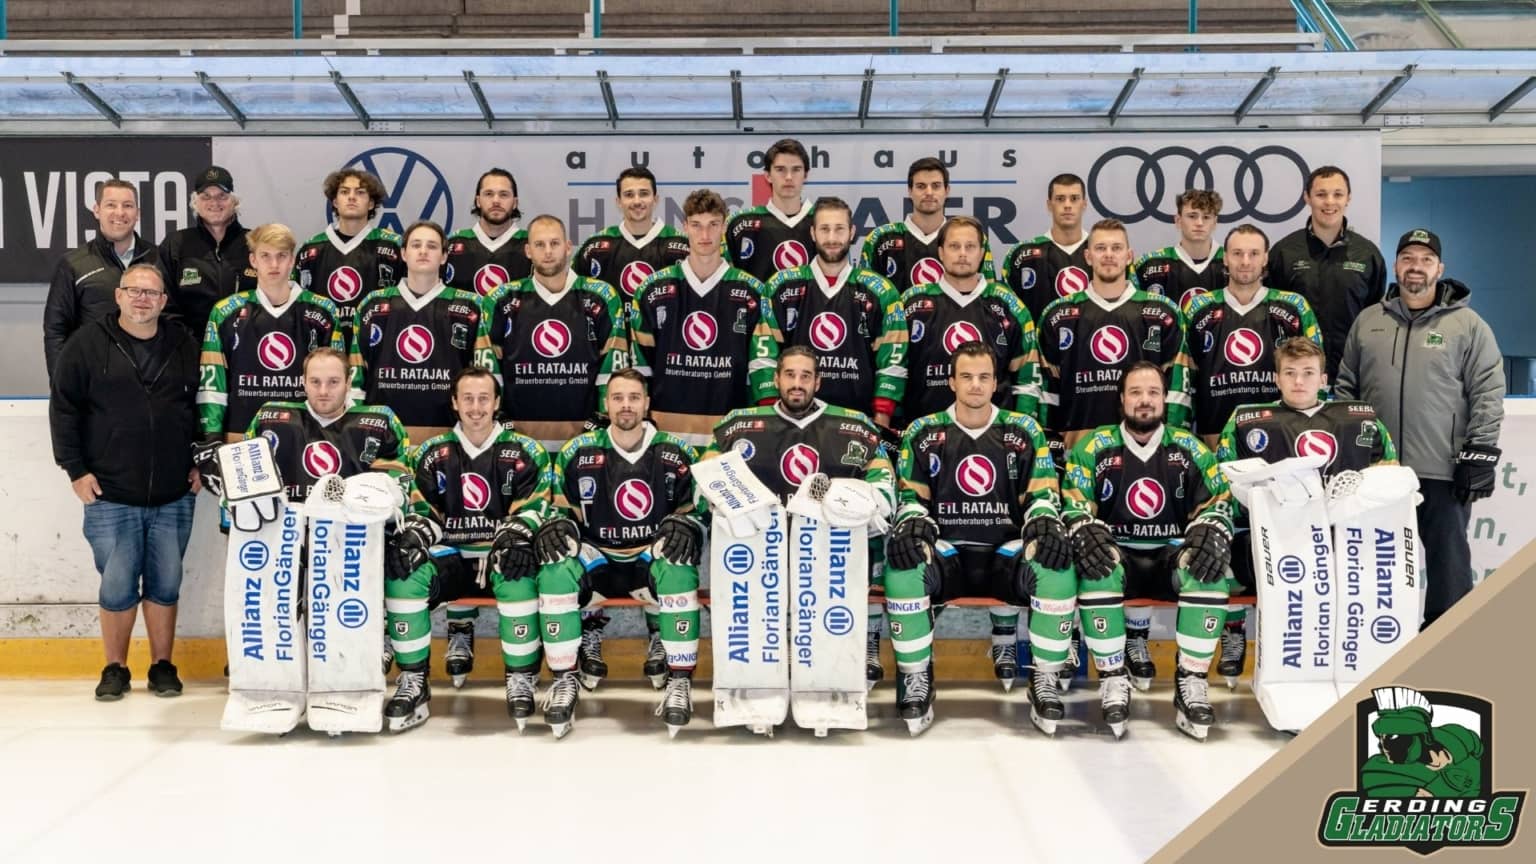 TSV Erding Eishockey Gladiators